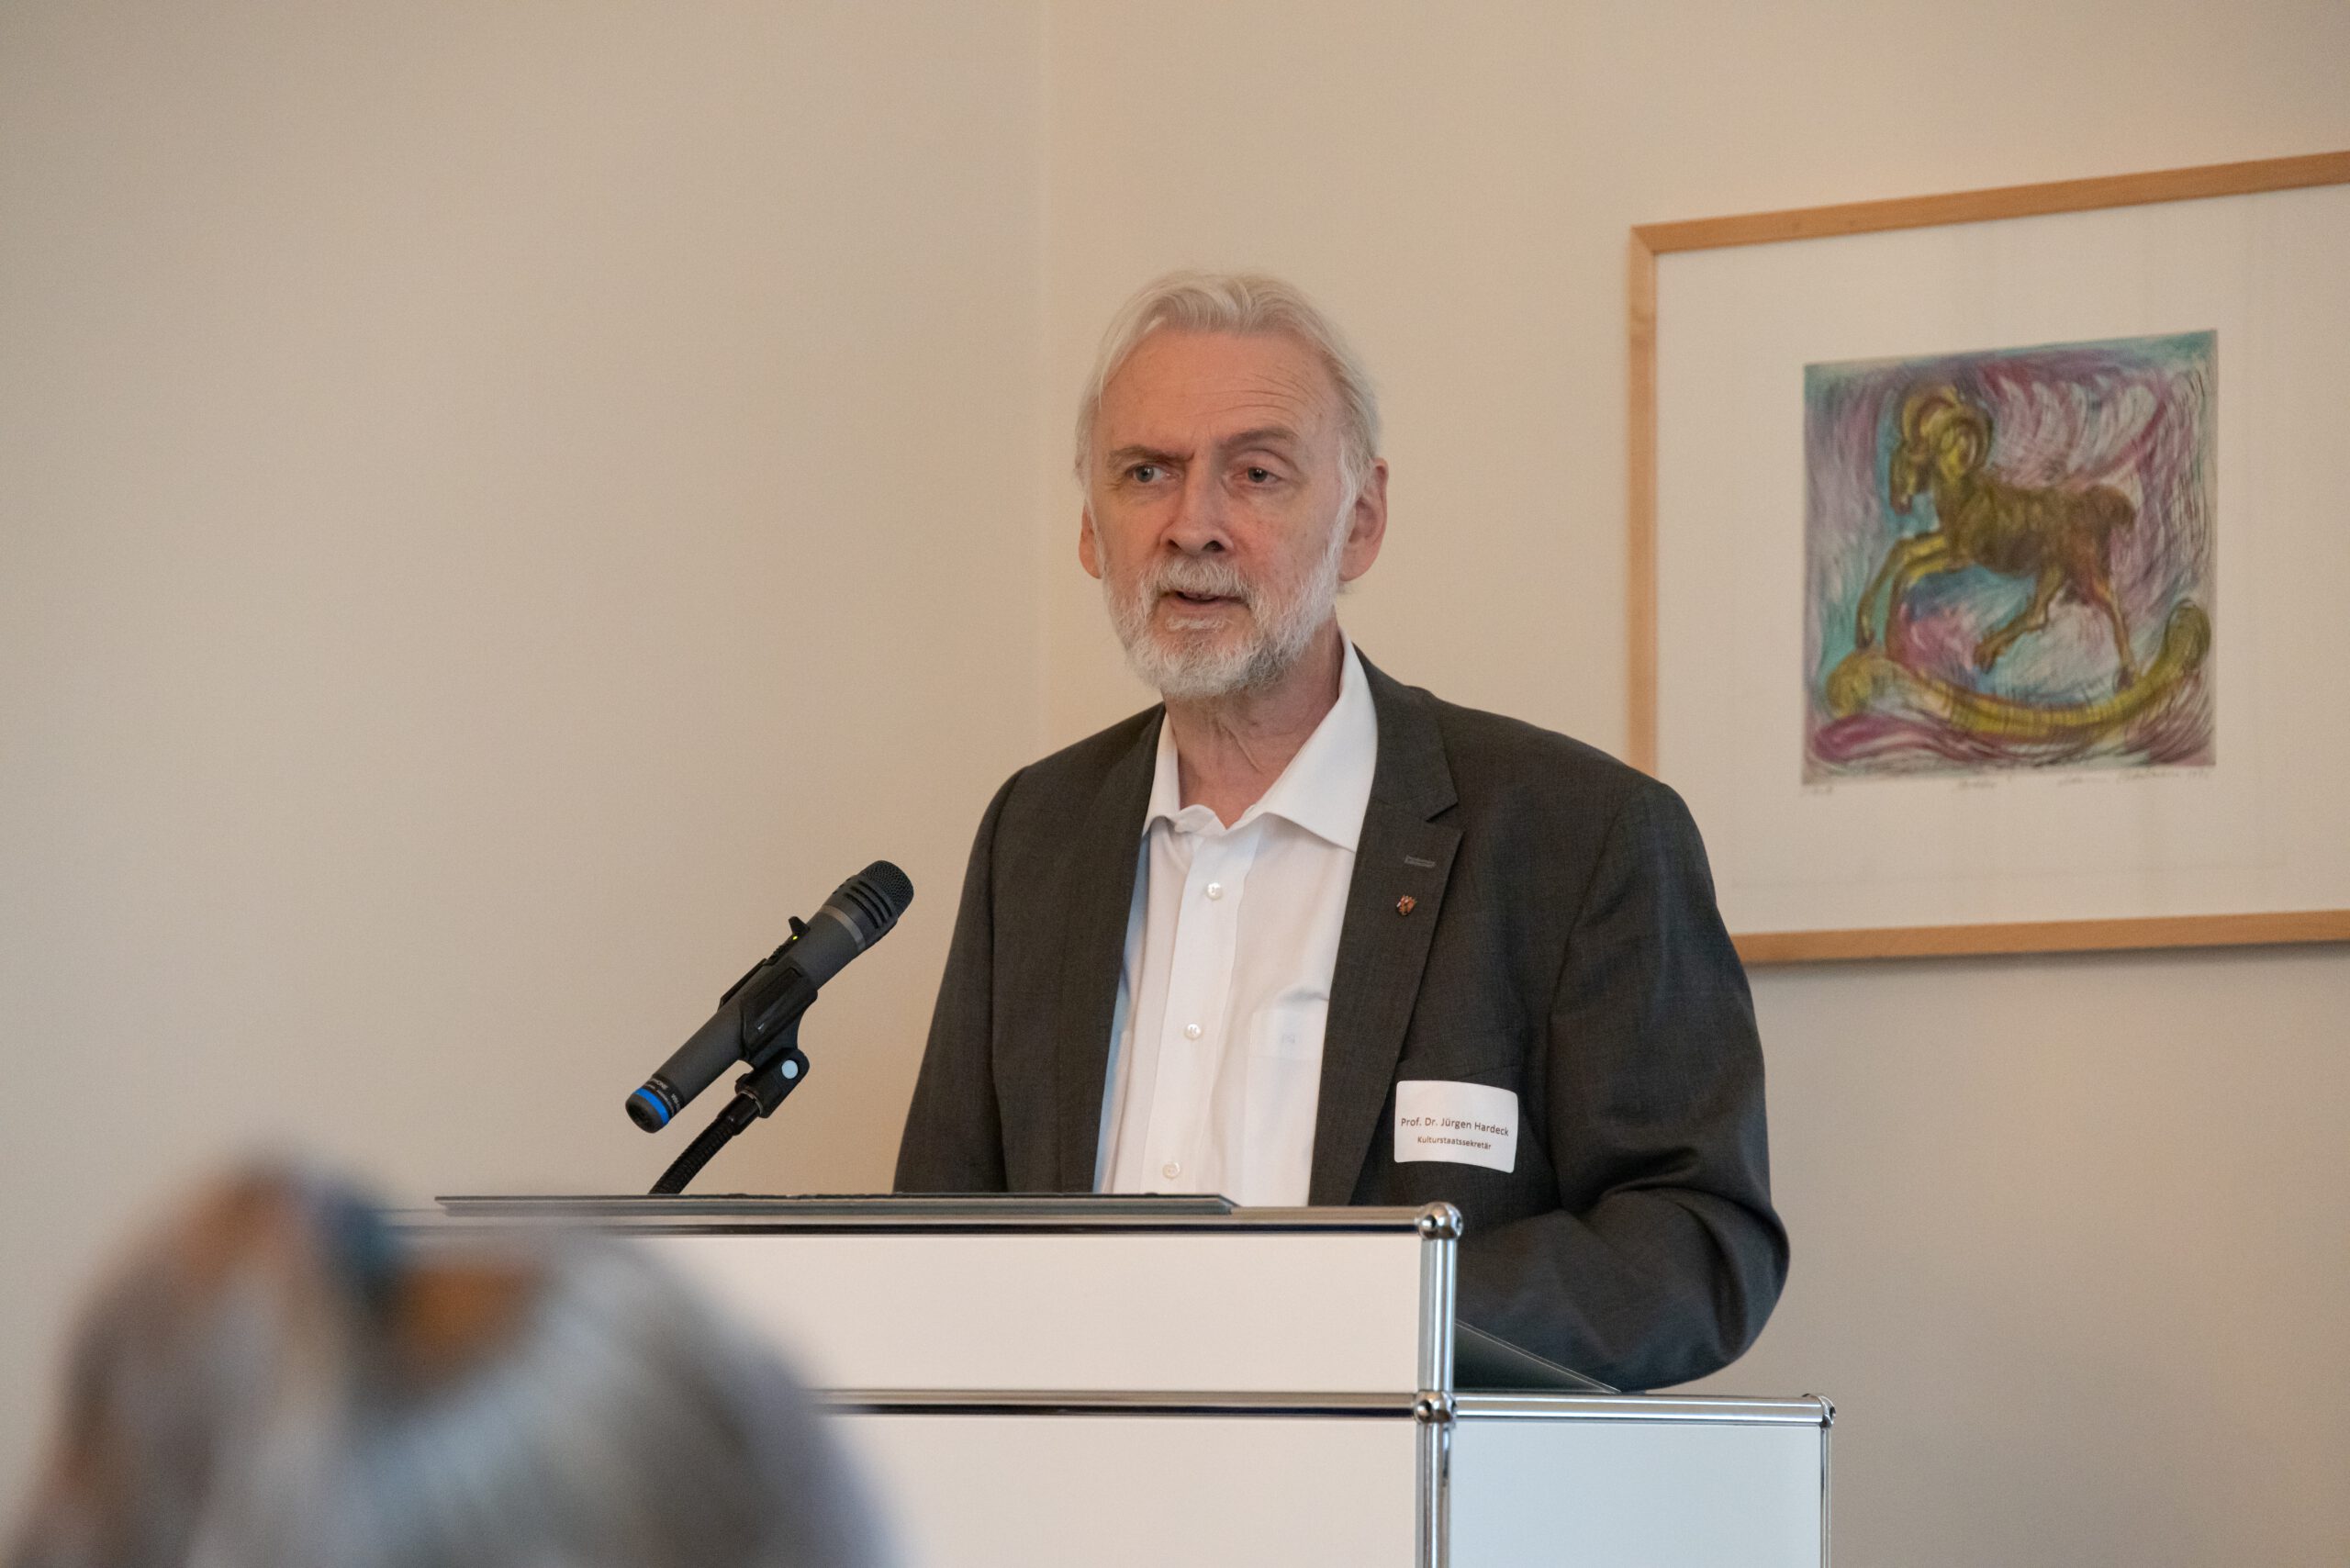 Kulturstaatssekretär Prof. Dr. Jürgen Hardeck am Rednerpult